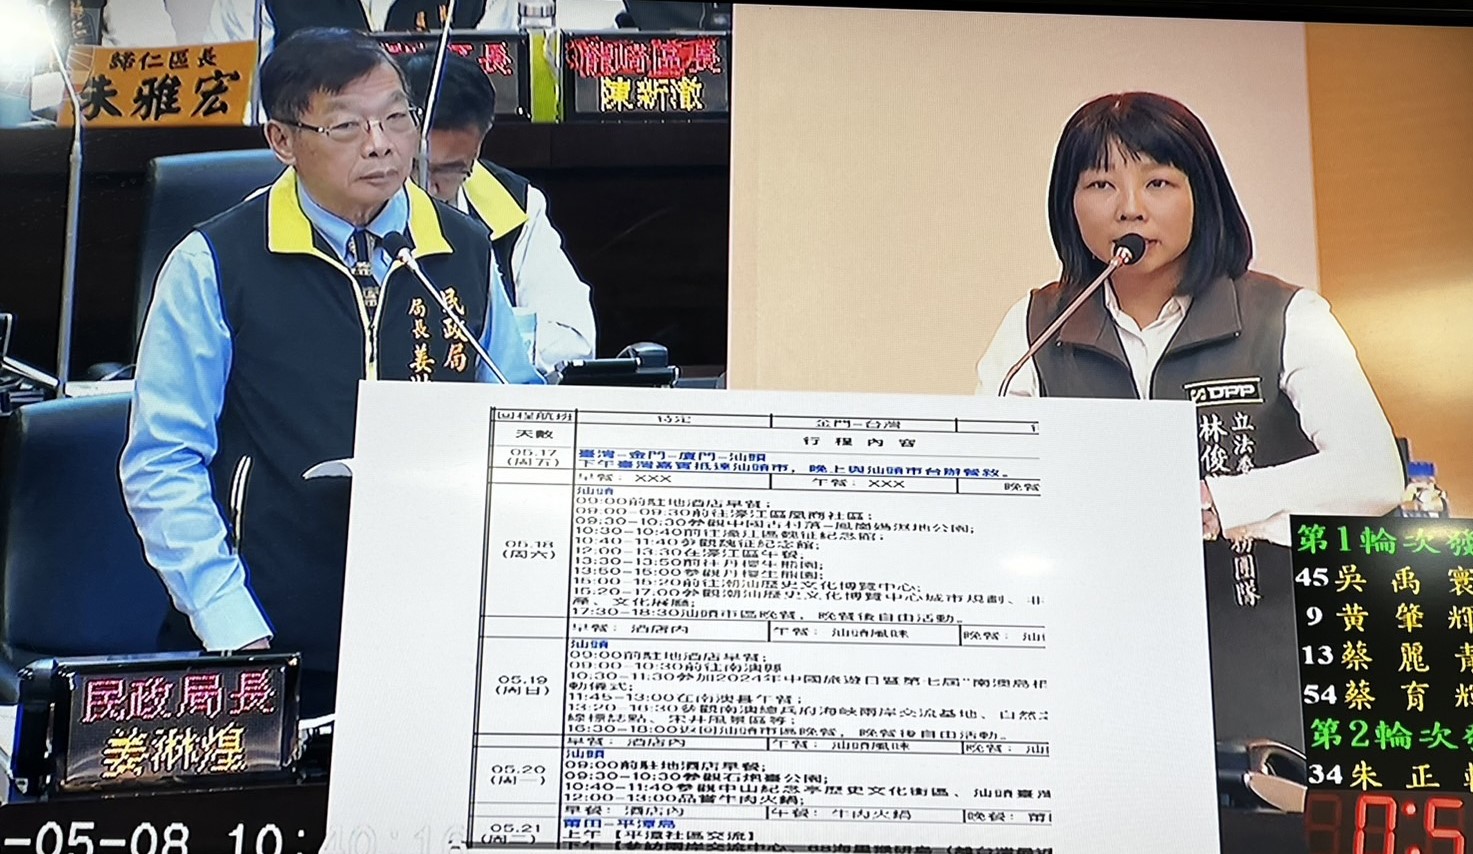 民进党台南市议员蔡筱薇（右）质询民政局长姜淋煌，针对里长组团赴中用不合理不对等的价值，要提醒注意背后用意。